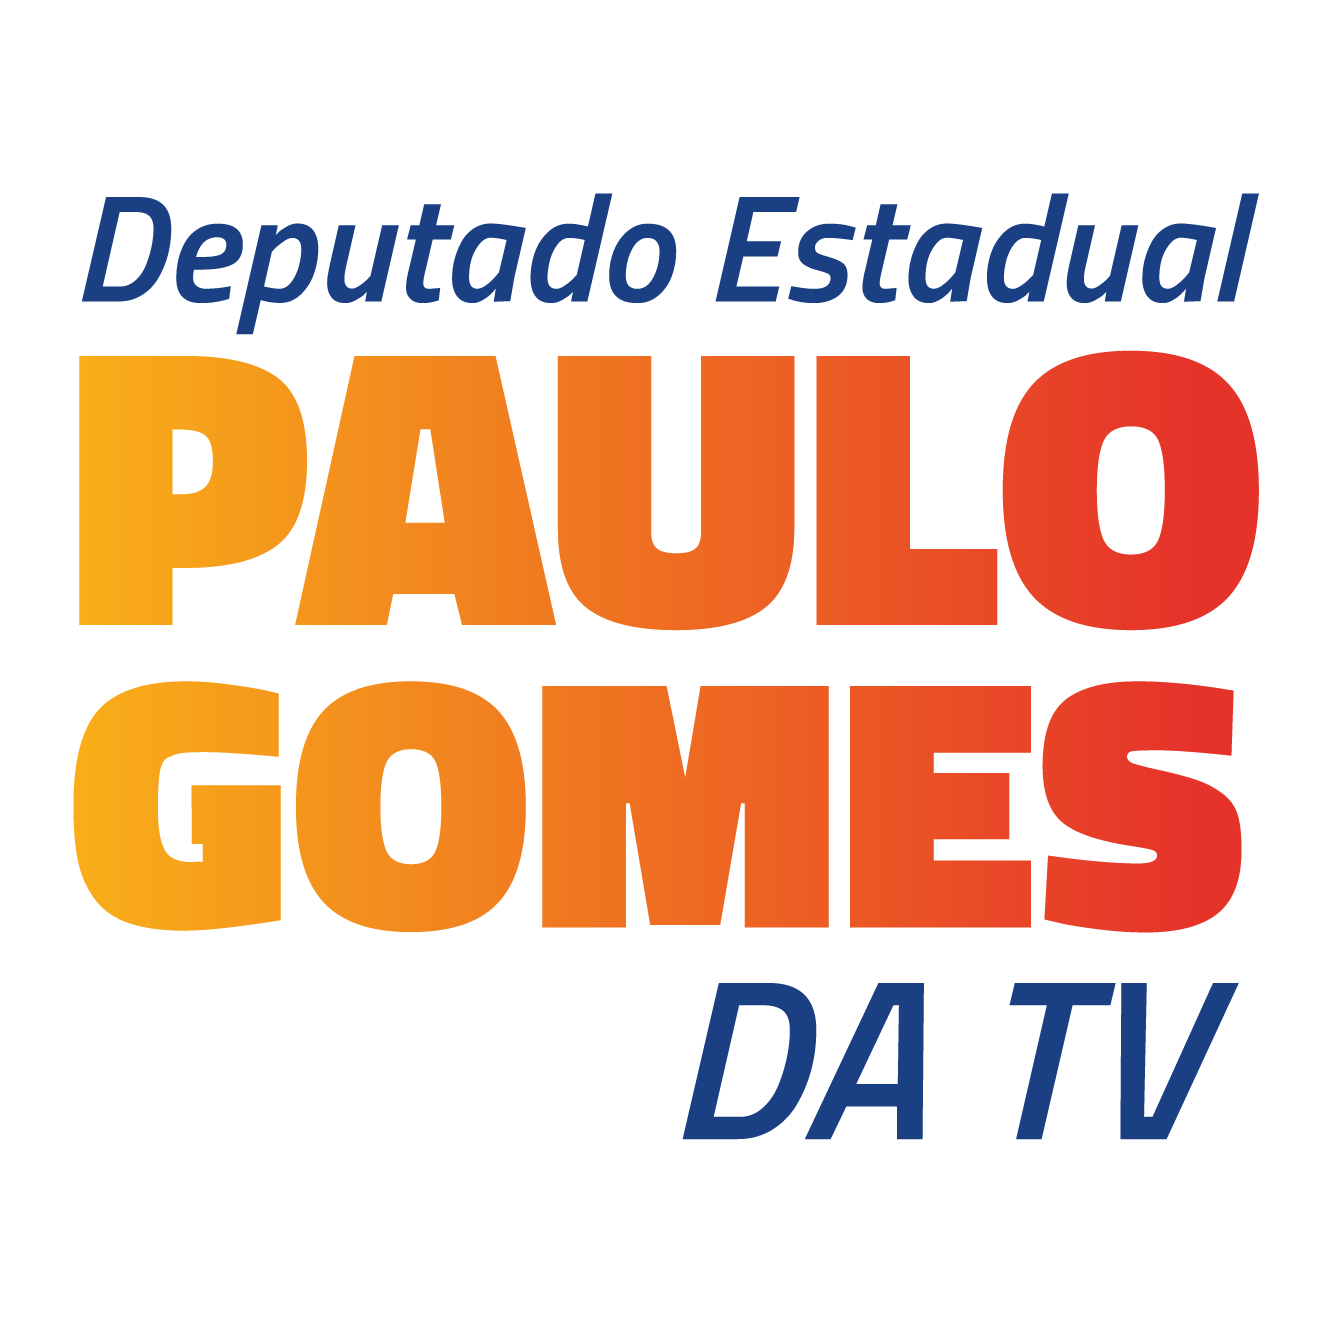 Paulo Gomes Da TV